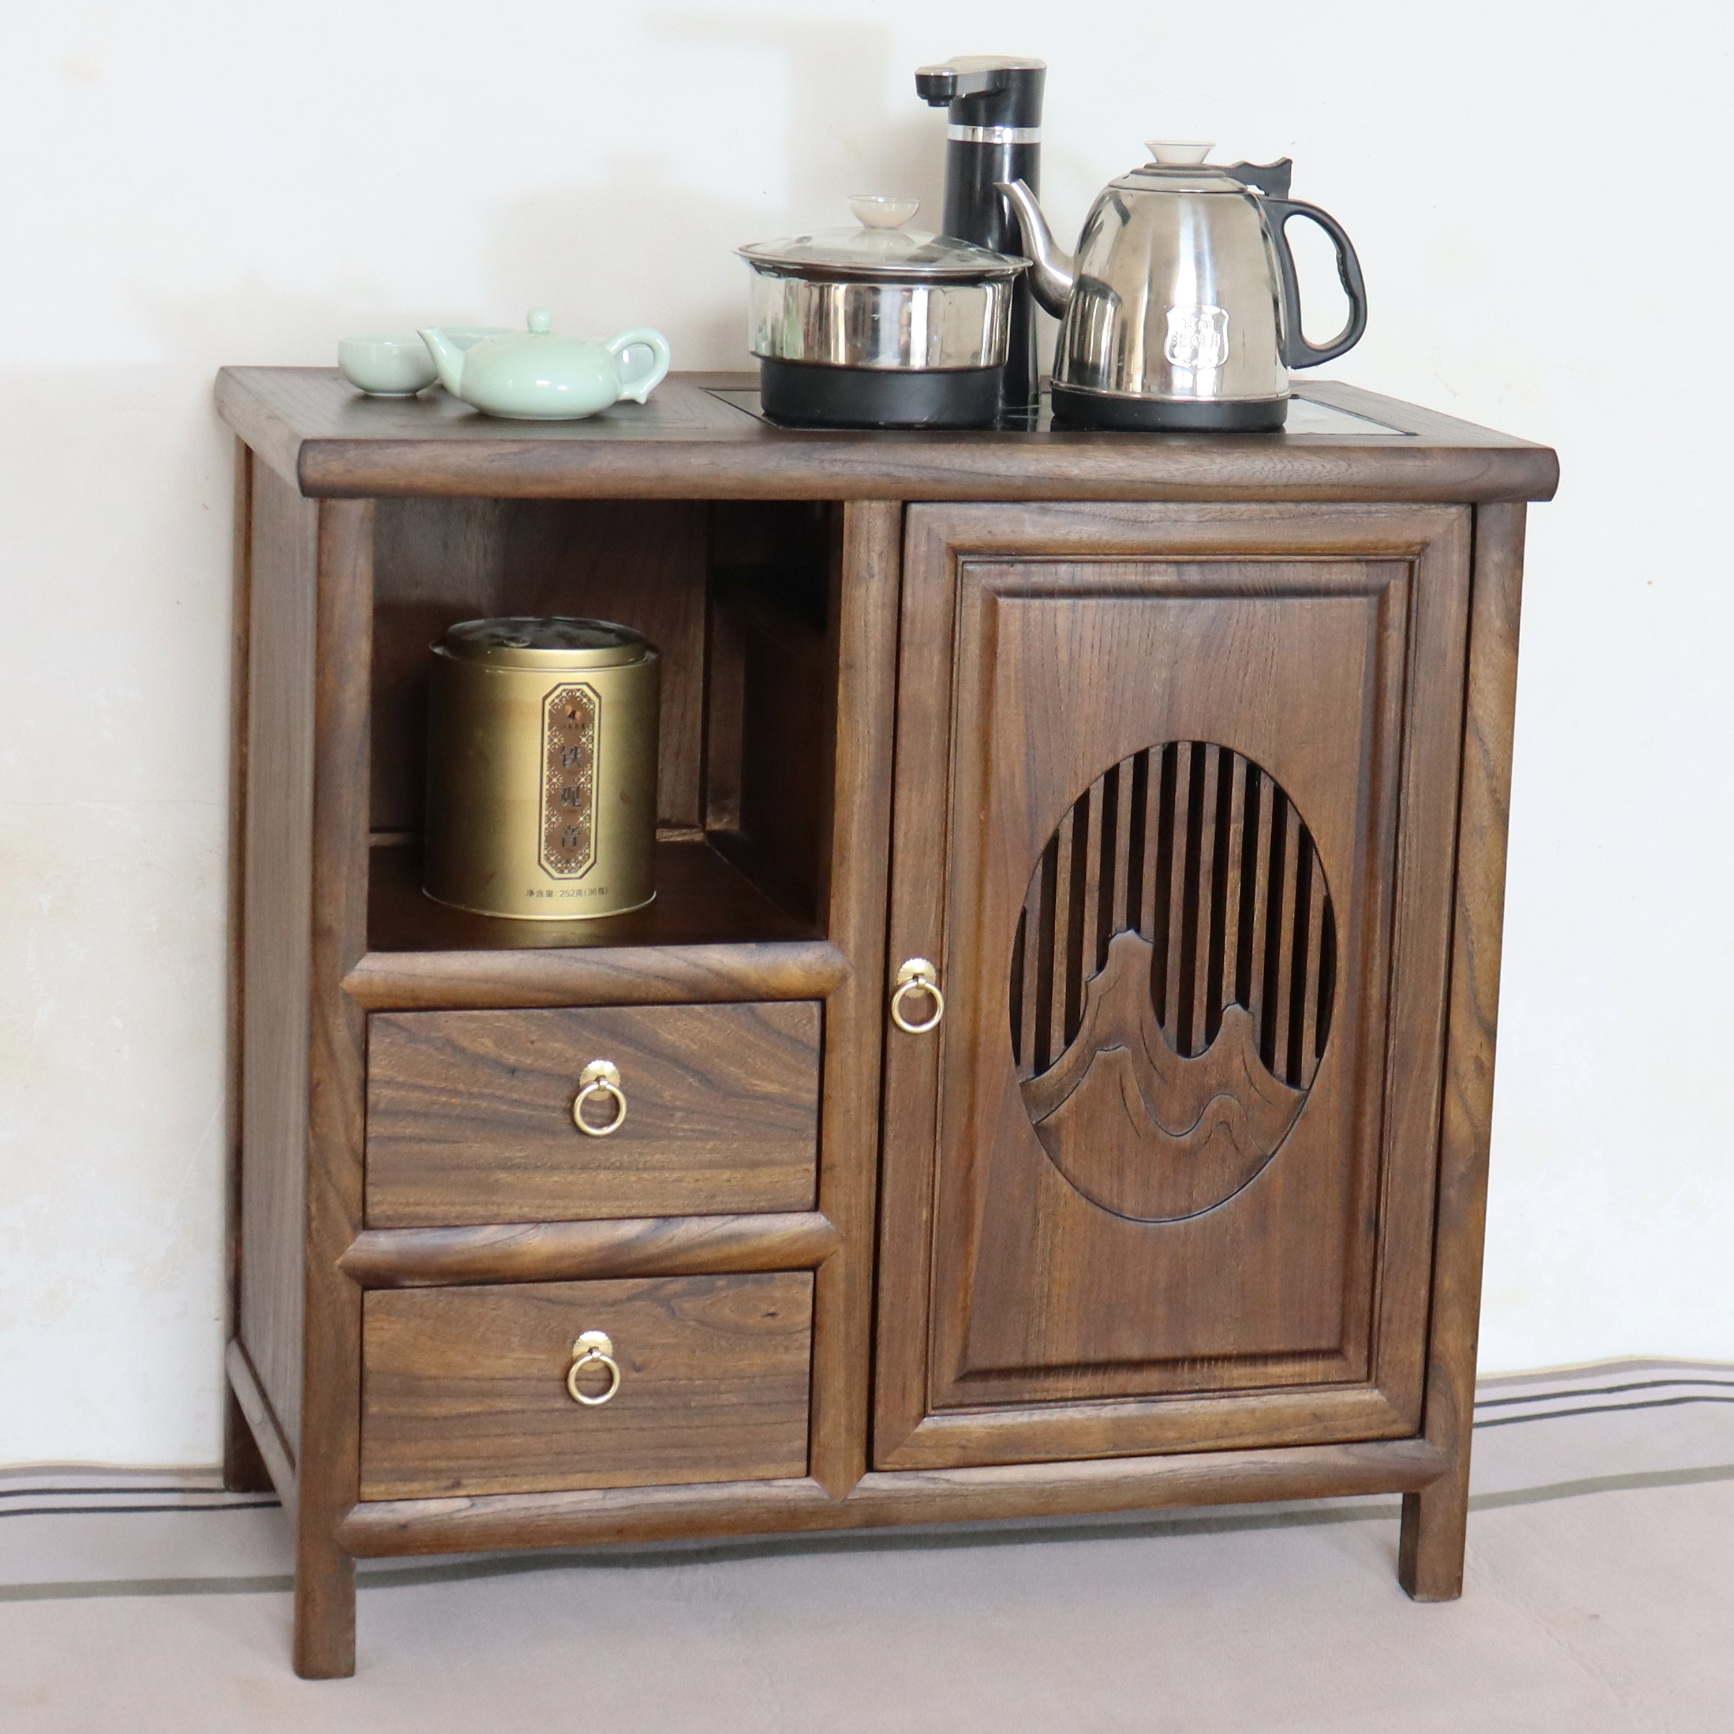 新中式茶水柜简约客厅实木餐边柜榆木移动小茶台多功能置物架矮柜